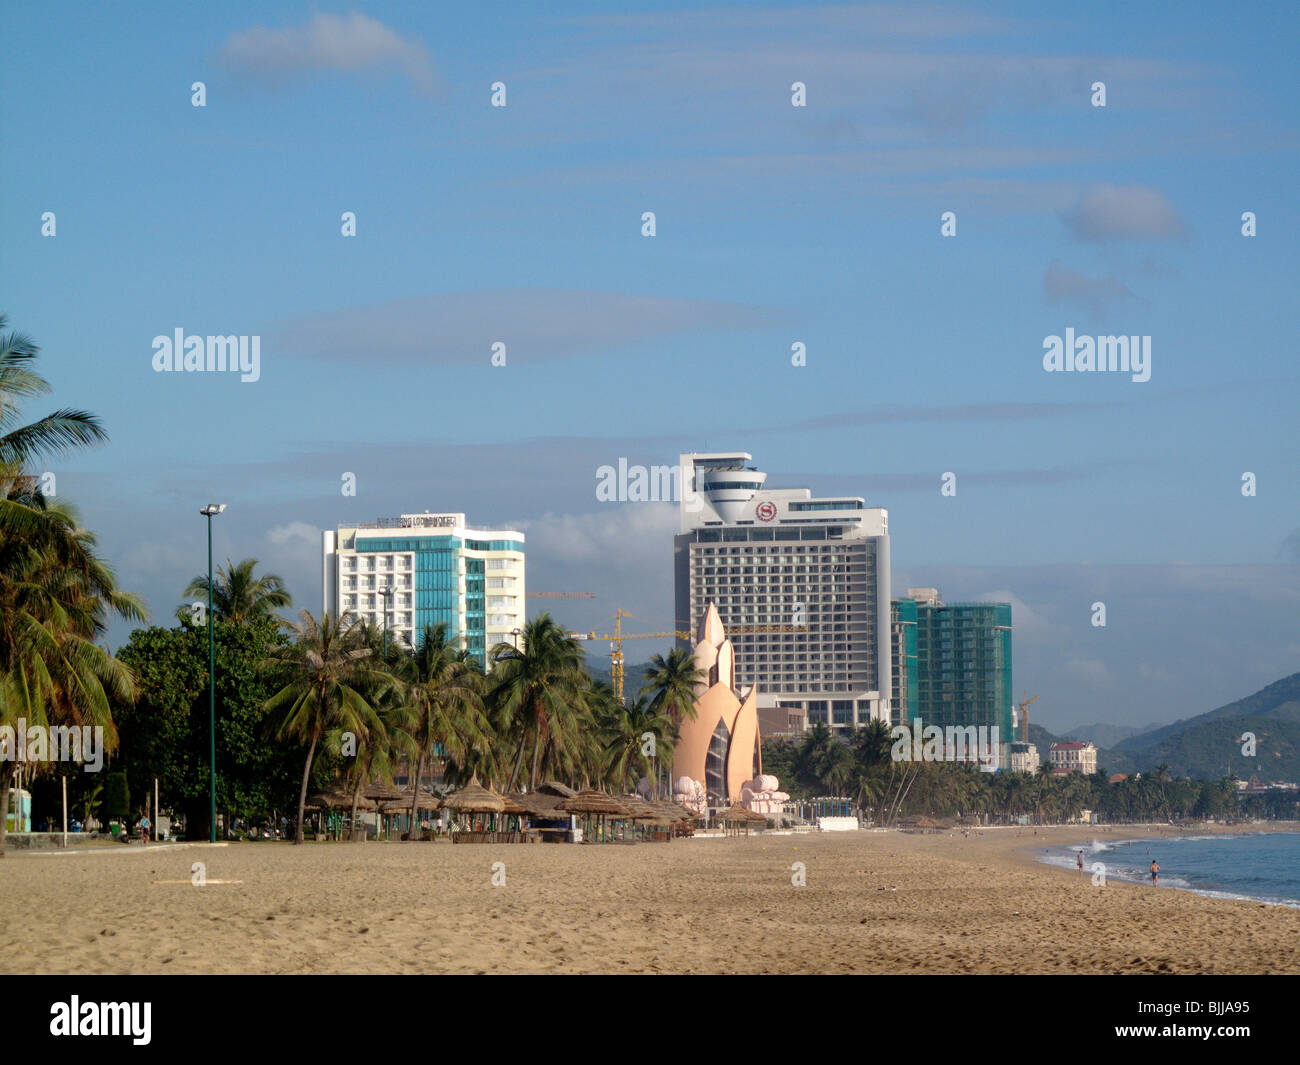 La plage de Nha Trang dans le sud Vietnam central Banque D'Images